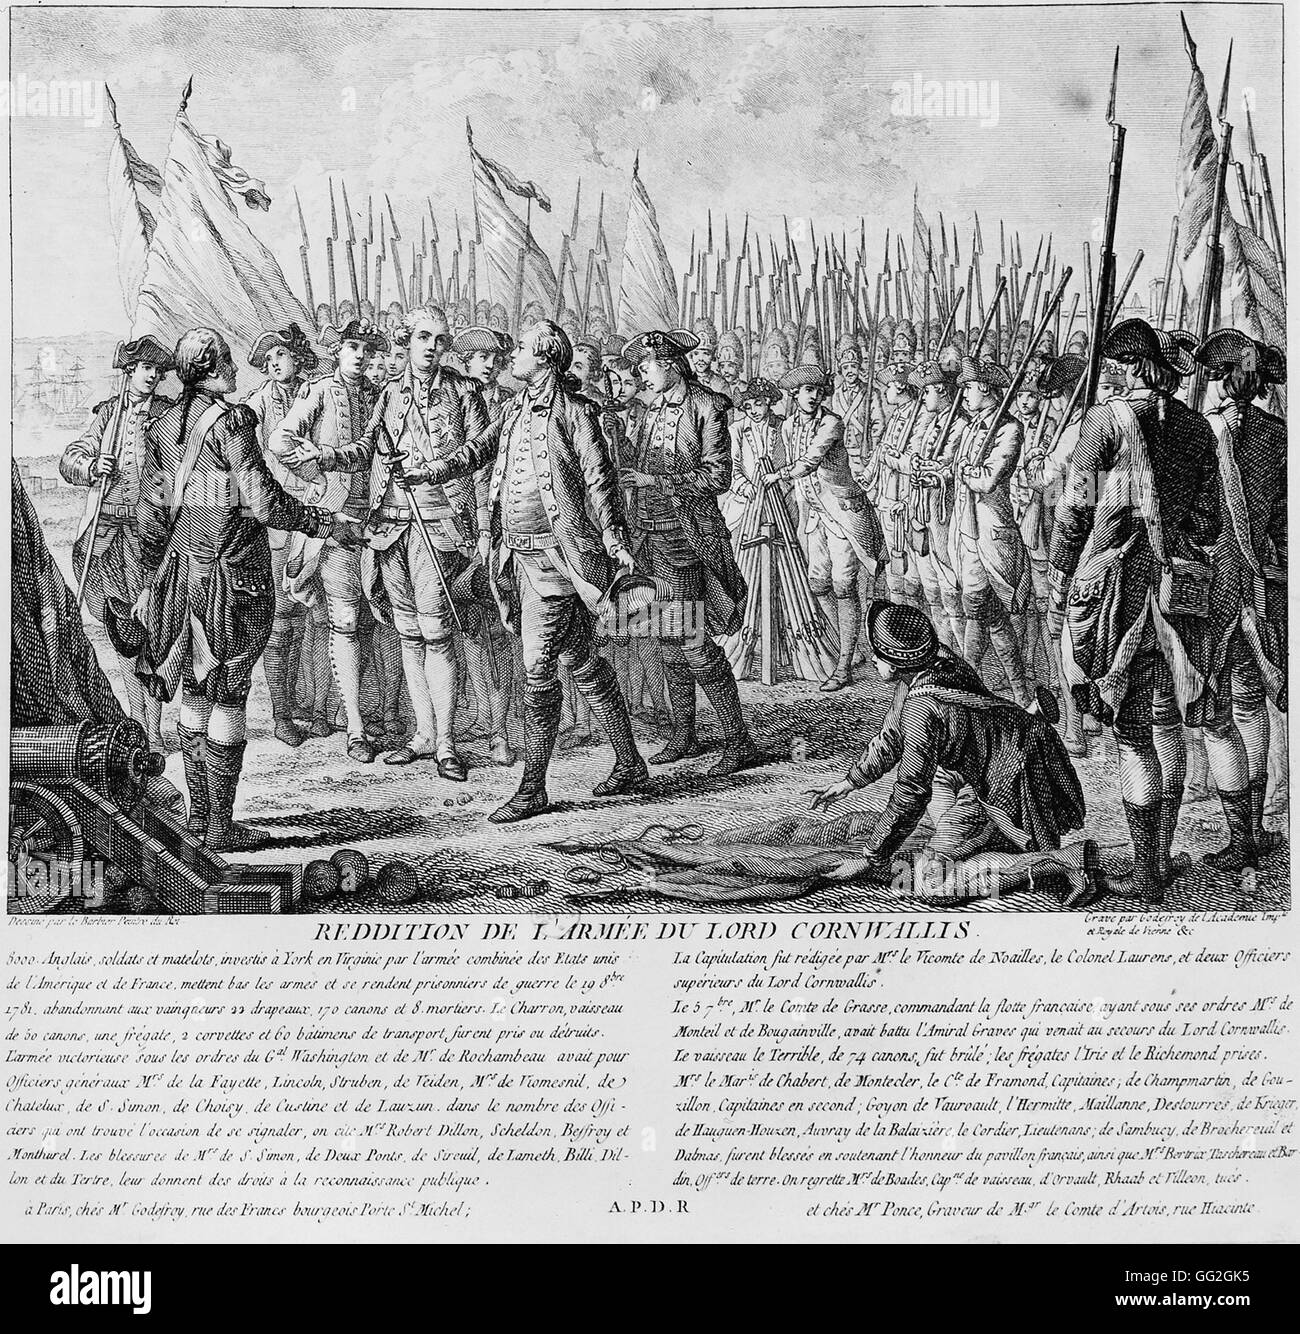 Entrega de Lord Cornwallis' ejército en la Batalla de Yorktown, 1781 de París, Bibliothèque Nationale de France Foto de stock